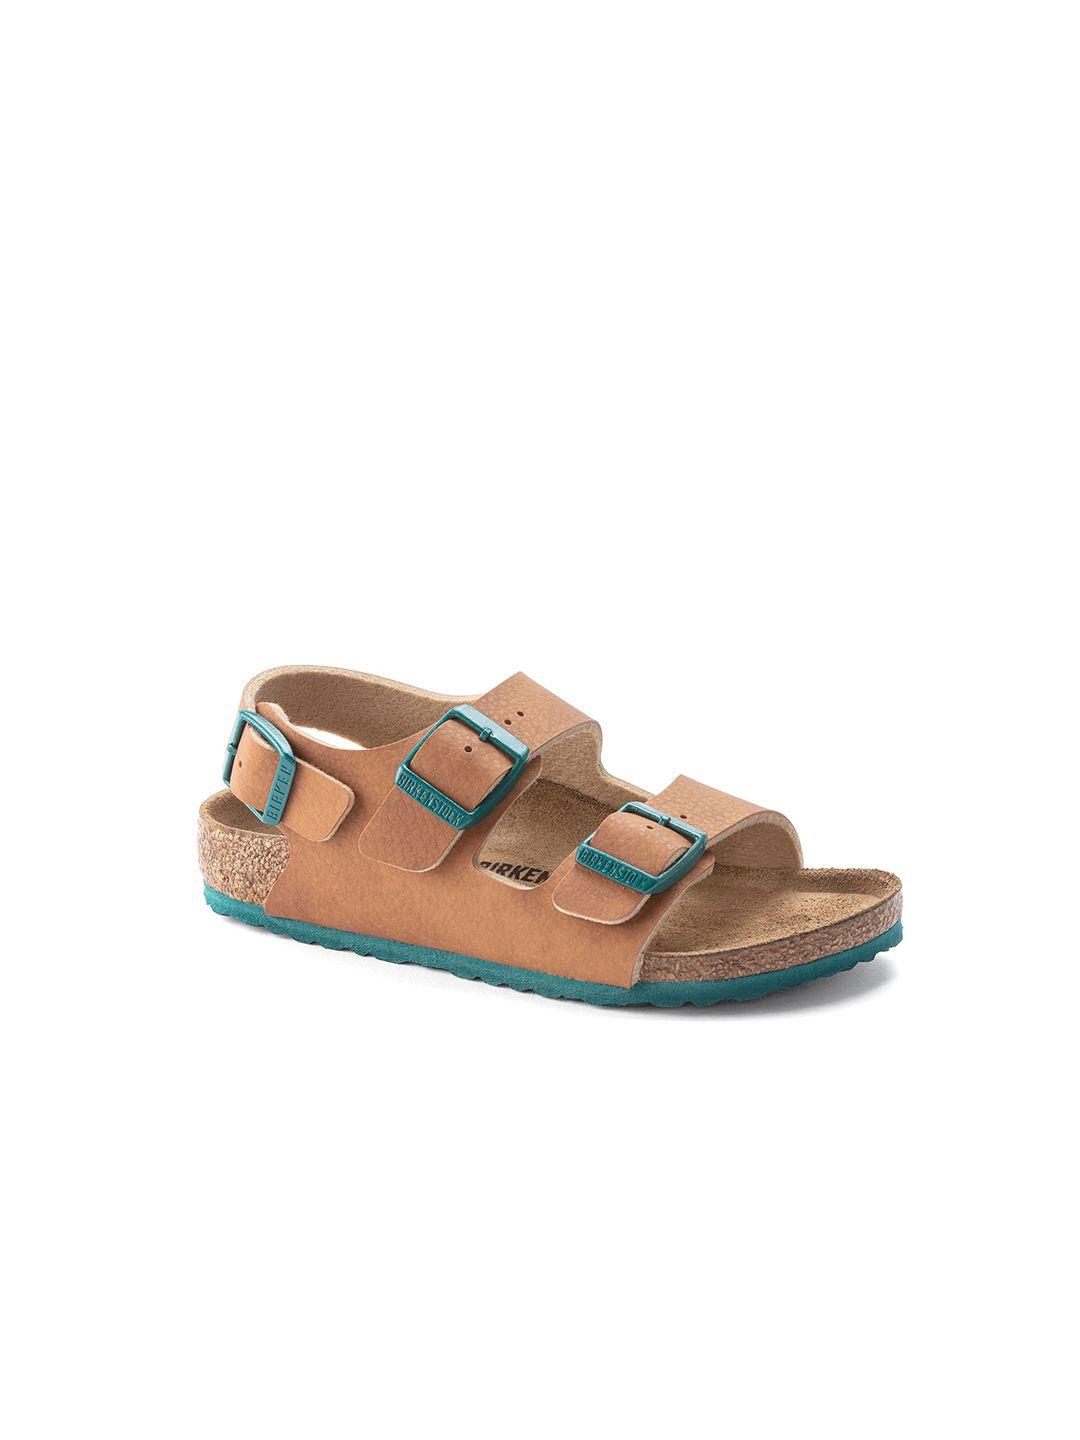 birkenstock boys brown narrow width milano comfort sandals